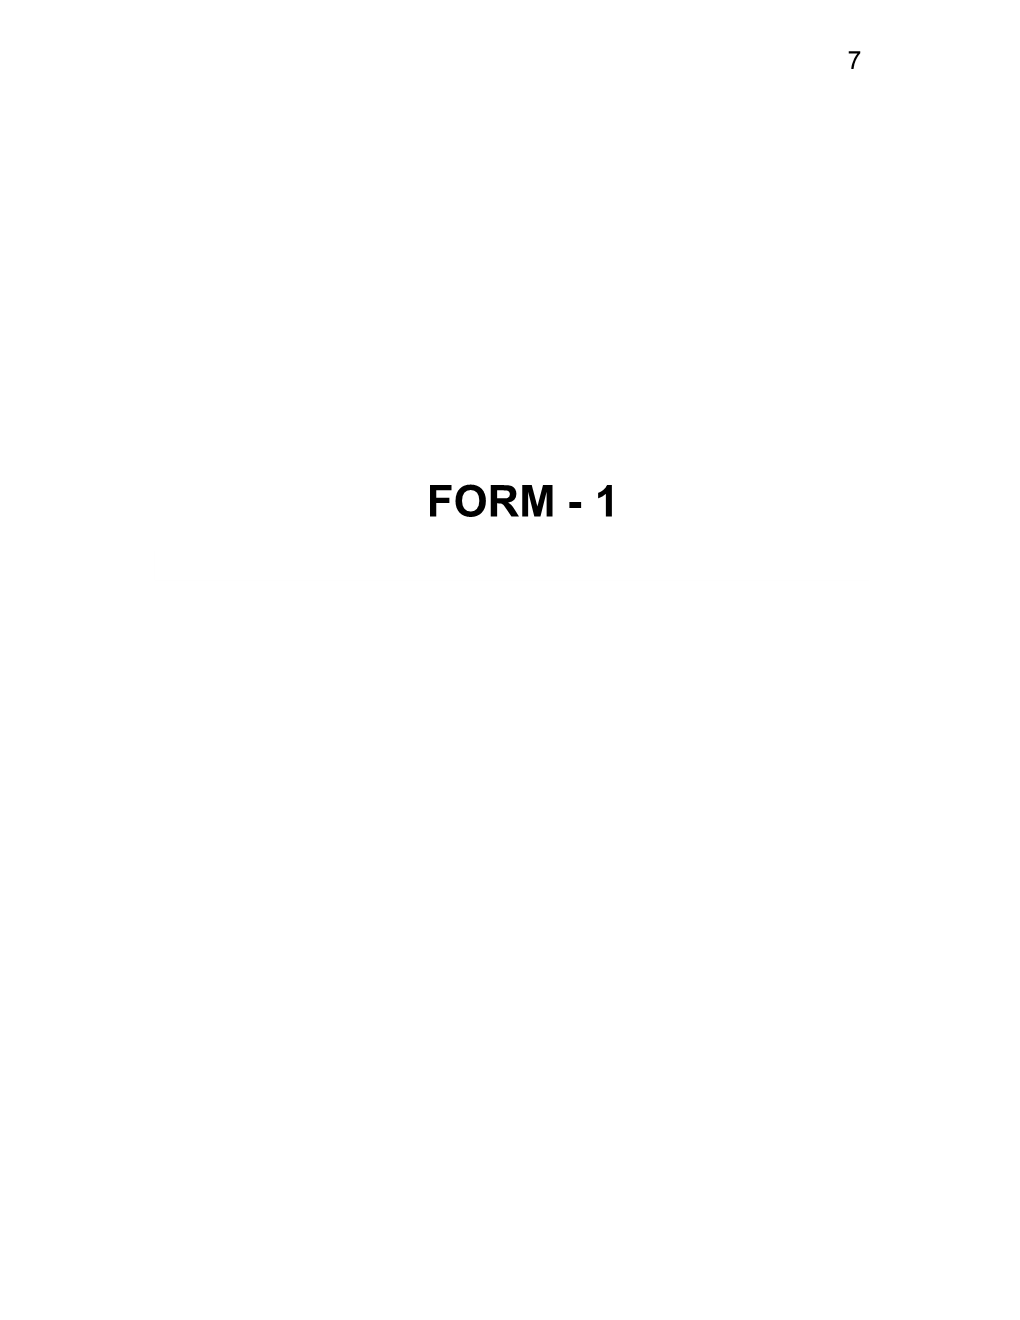 FORM - 1 8 APPENDIX I (See Paragraph – 6) FORM - 1 I Basic Information S